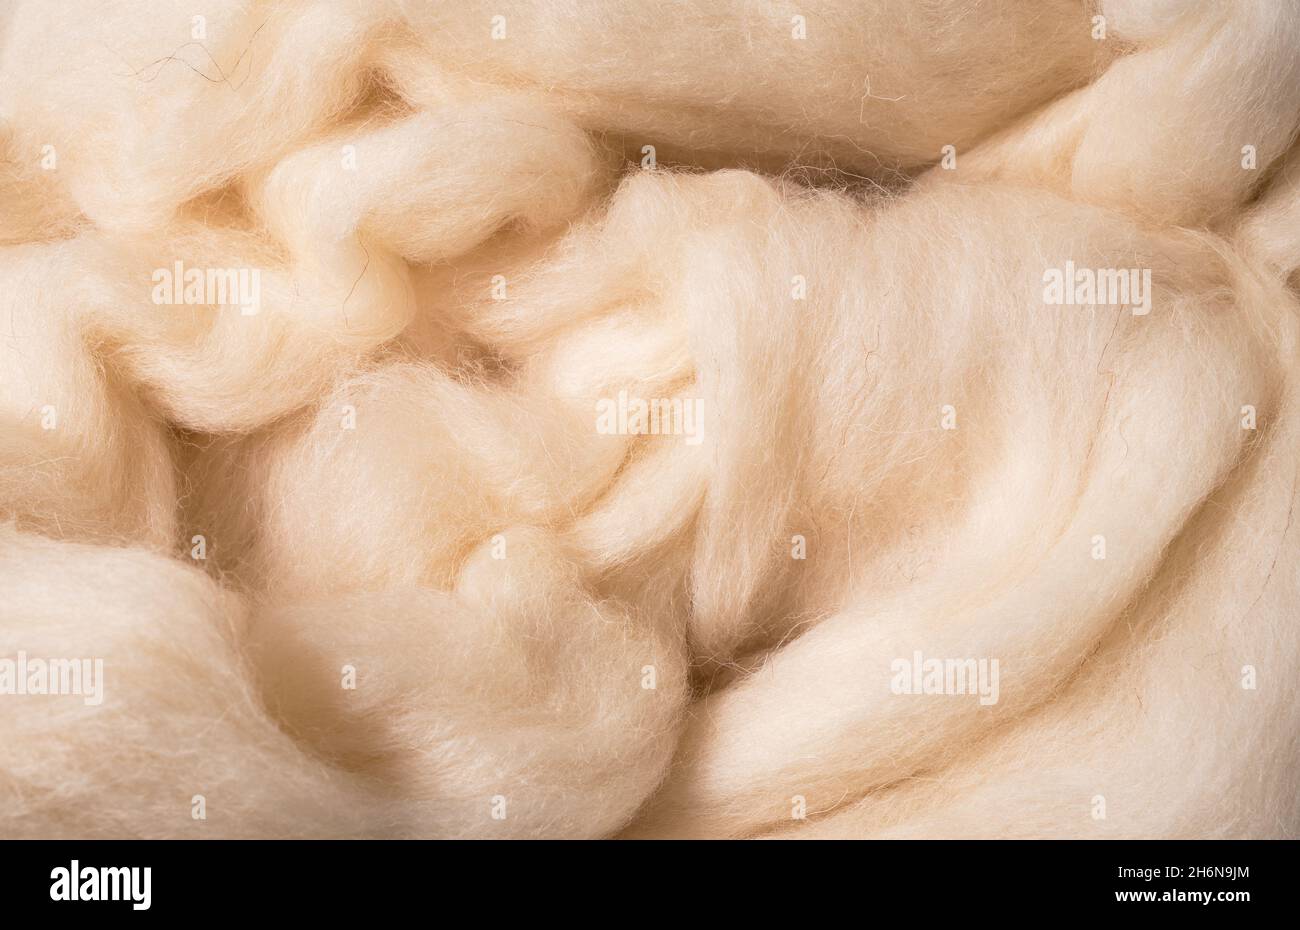 lana merino, lattiginosa e resistente per feltri per texture e fondo Foto Stock